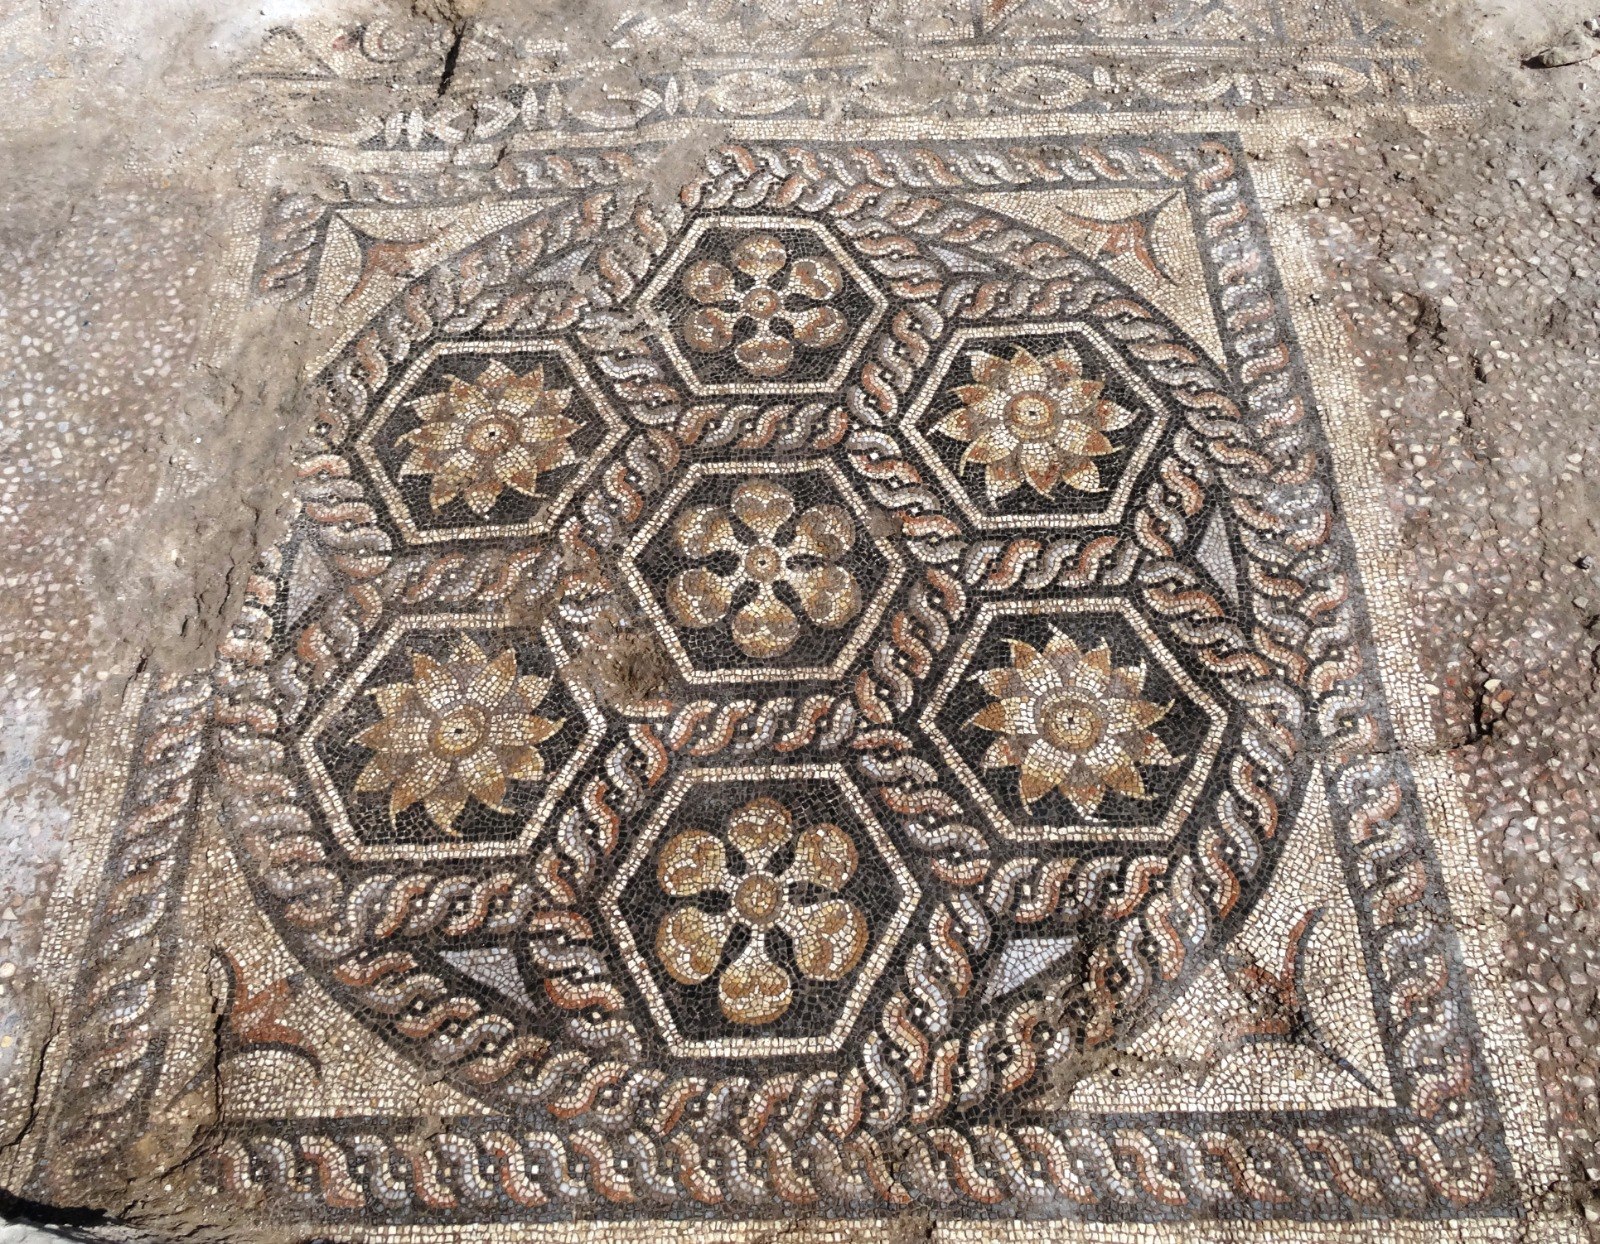 Egypt Alexandria mosaic